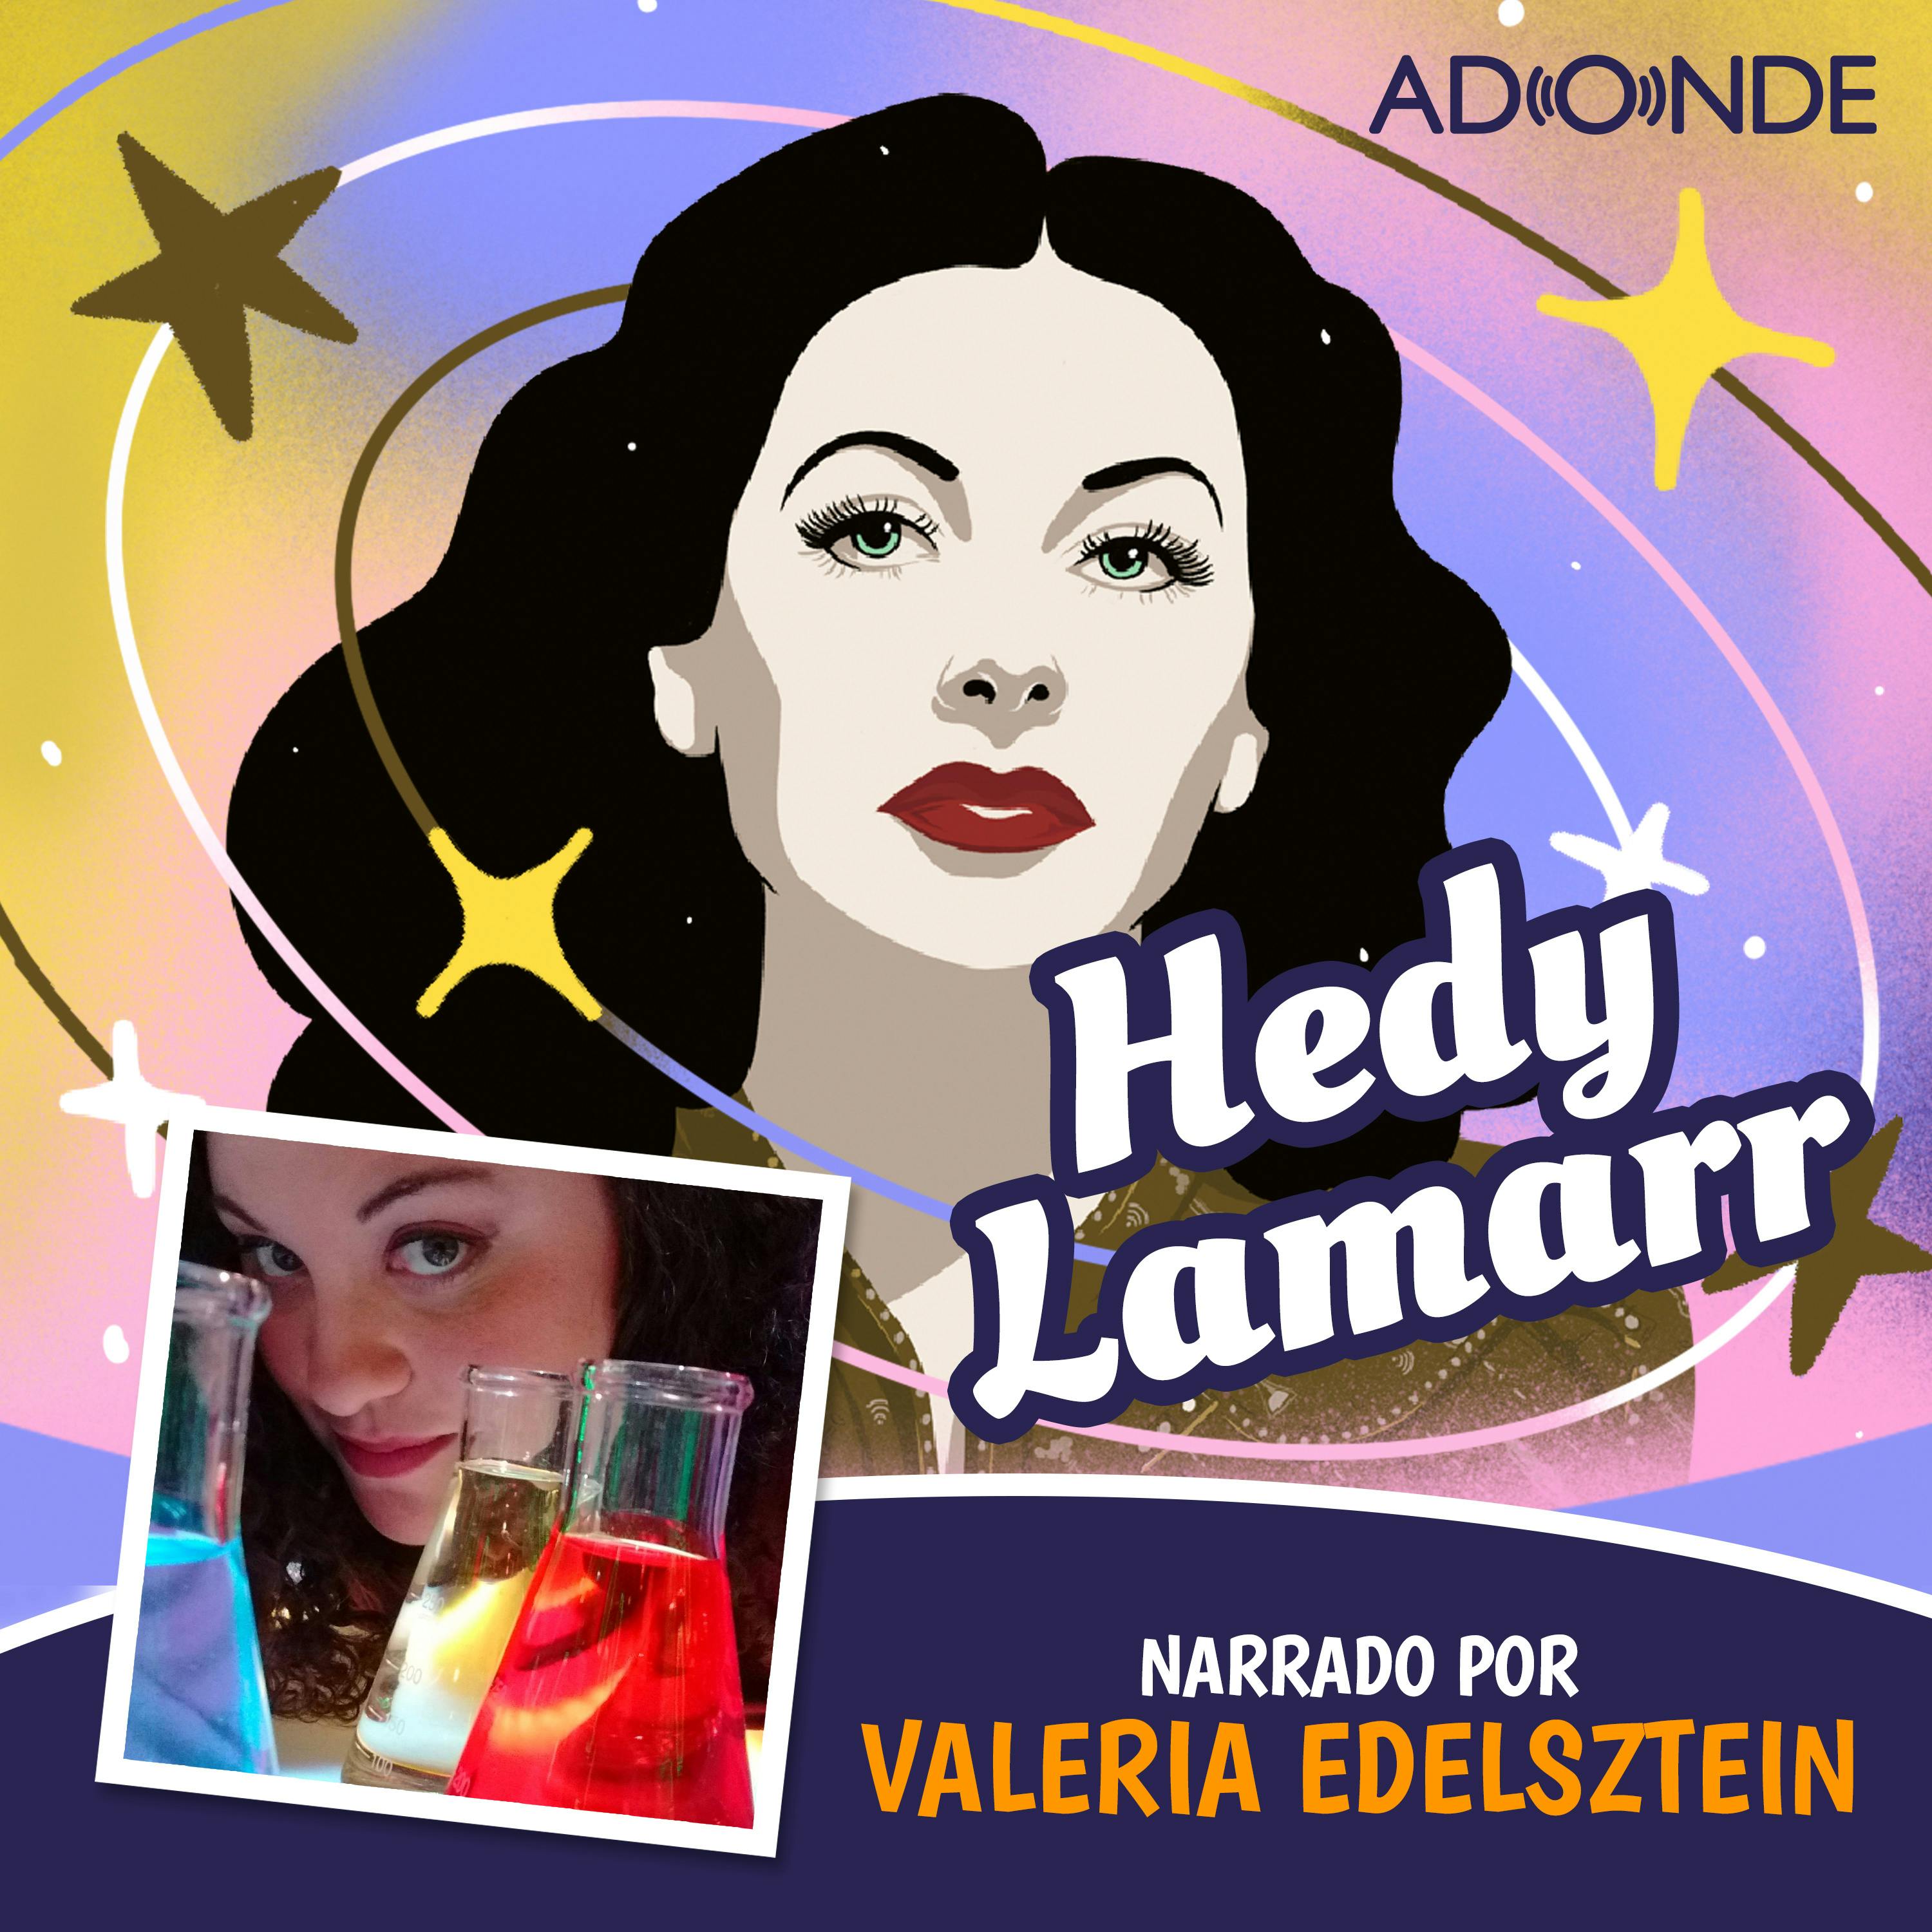 Hedy Lamarr narrado por Valeria Edelsztein